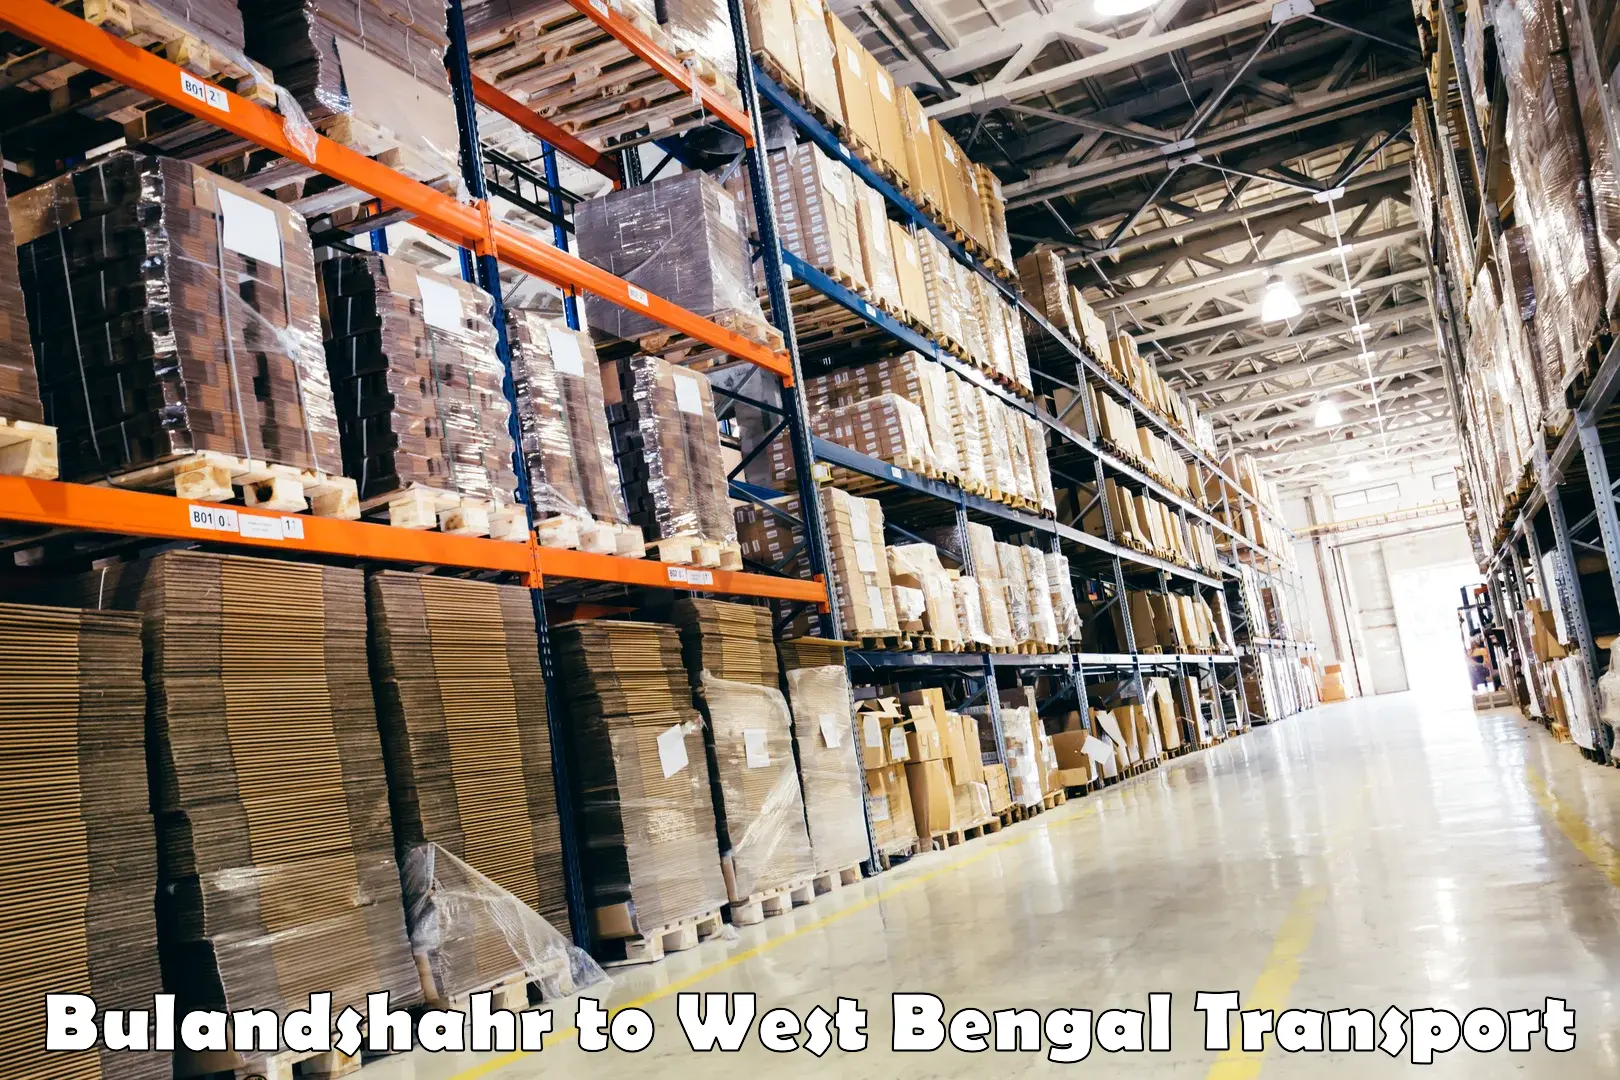 Shipping partner Bulandshahr to West Bengal